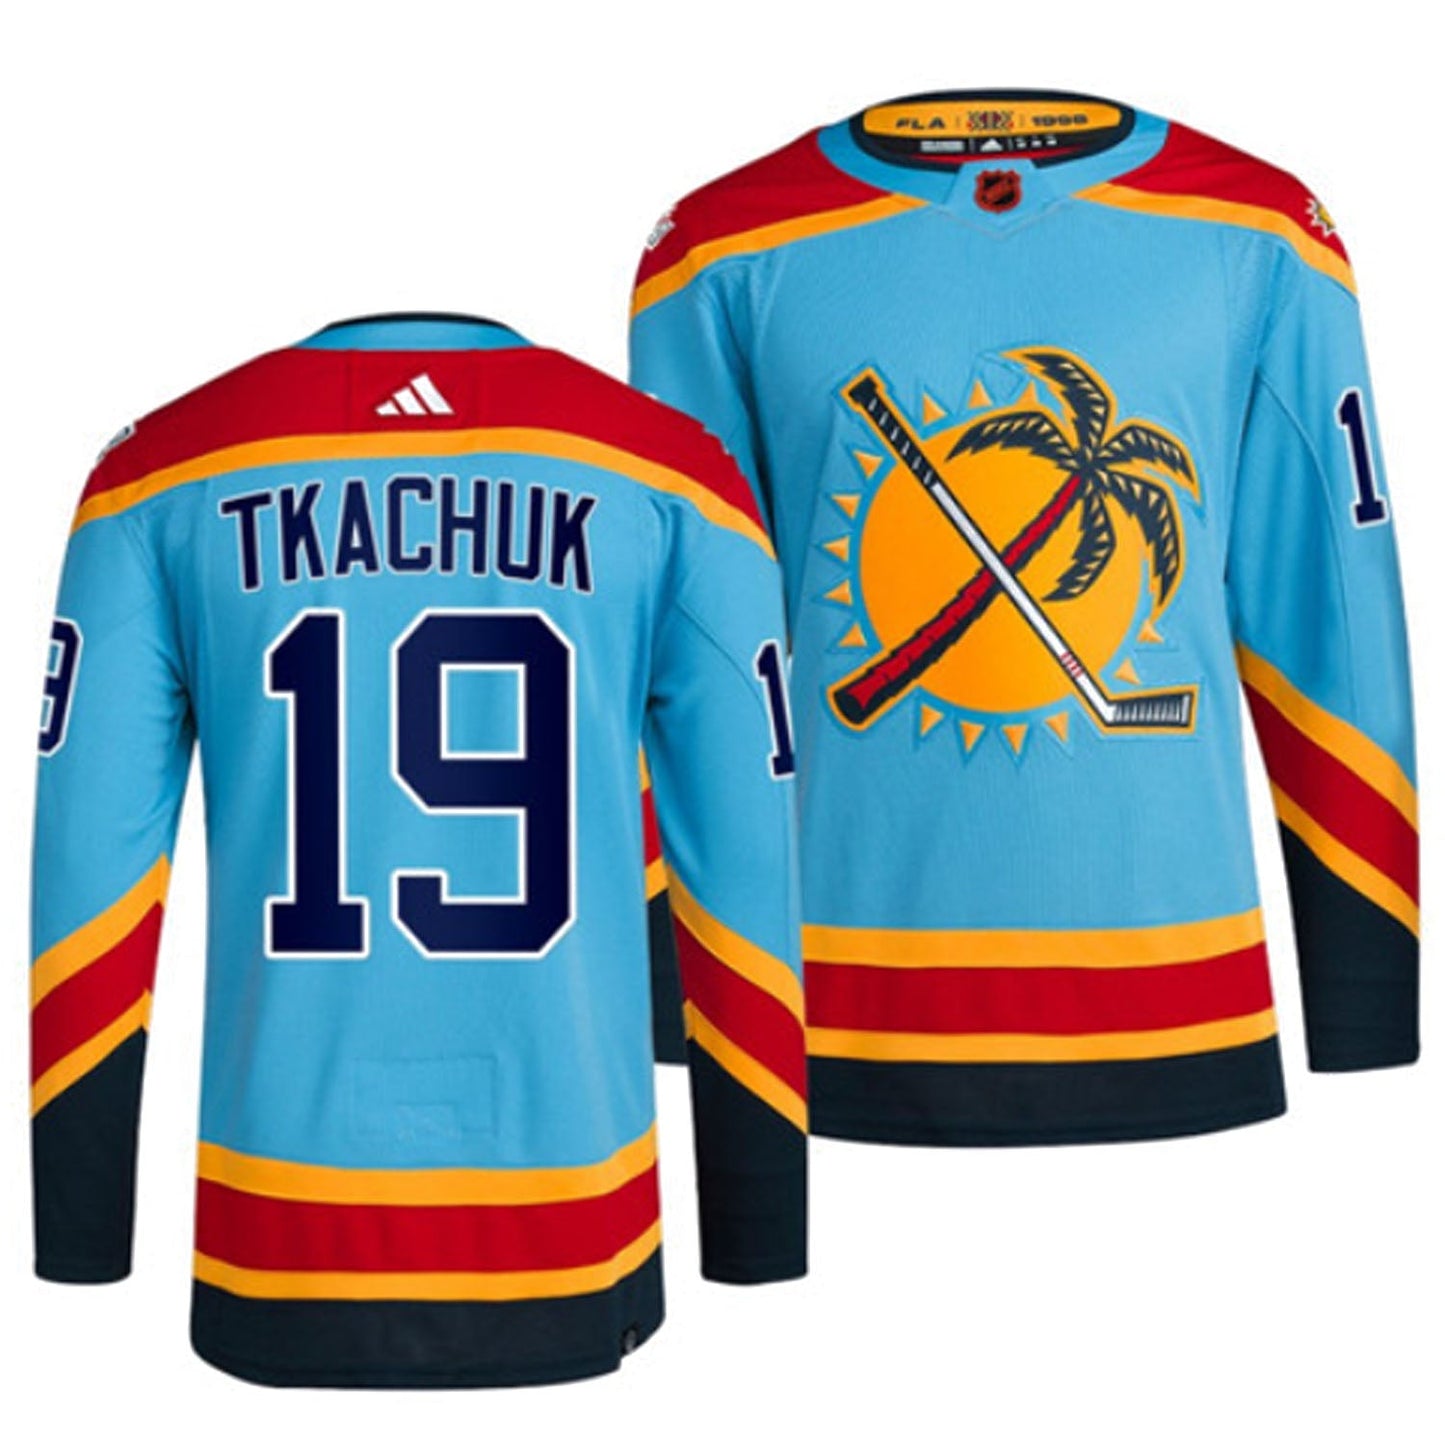 NHL Matthew Tkachuk Florida Panthers 19 Jersey